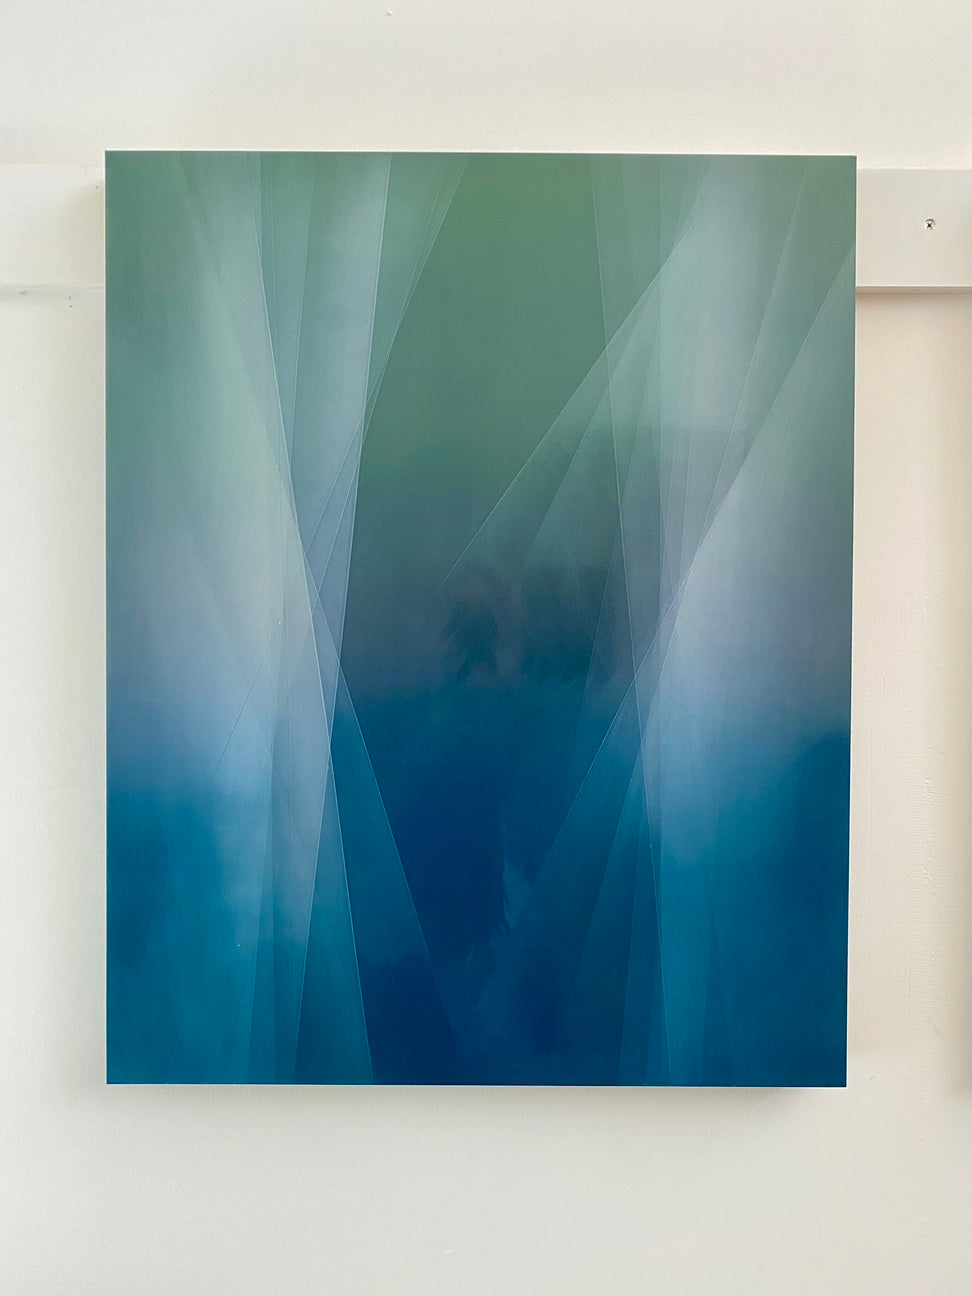 Bernadette Jiyong Frank - Refraction of Blue and Green